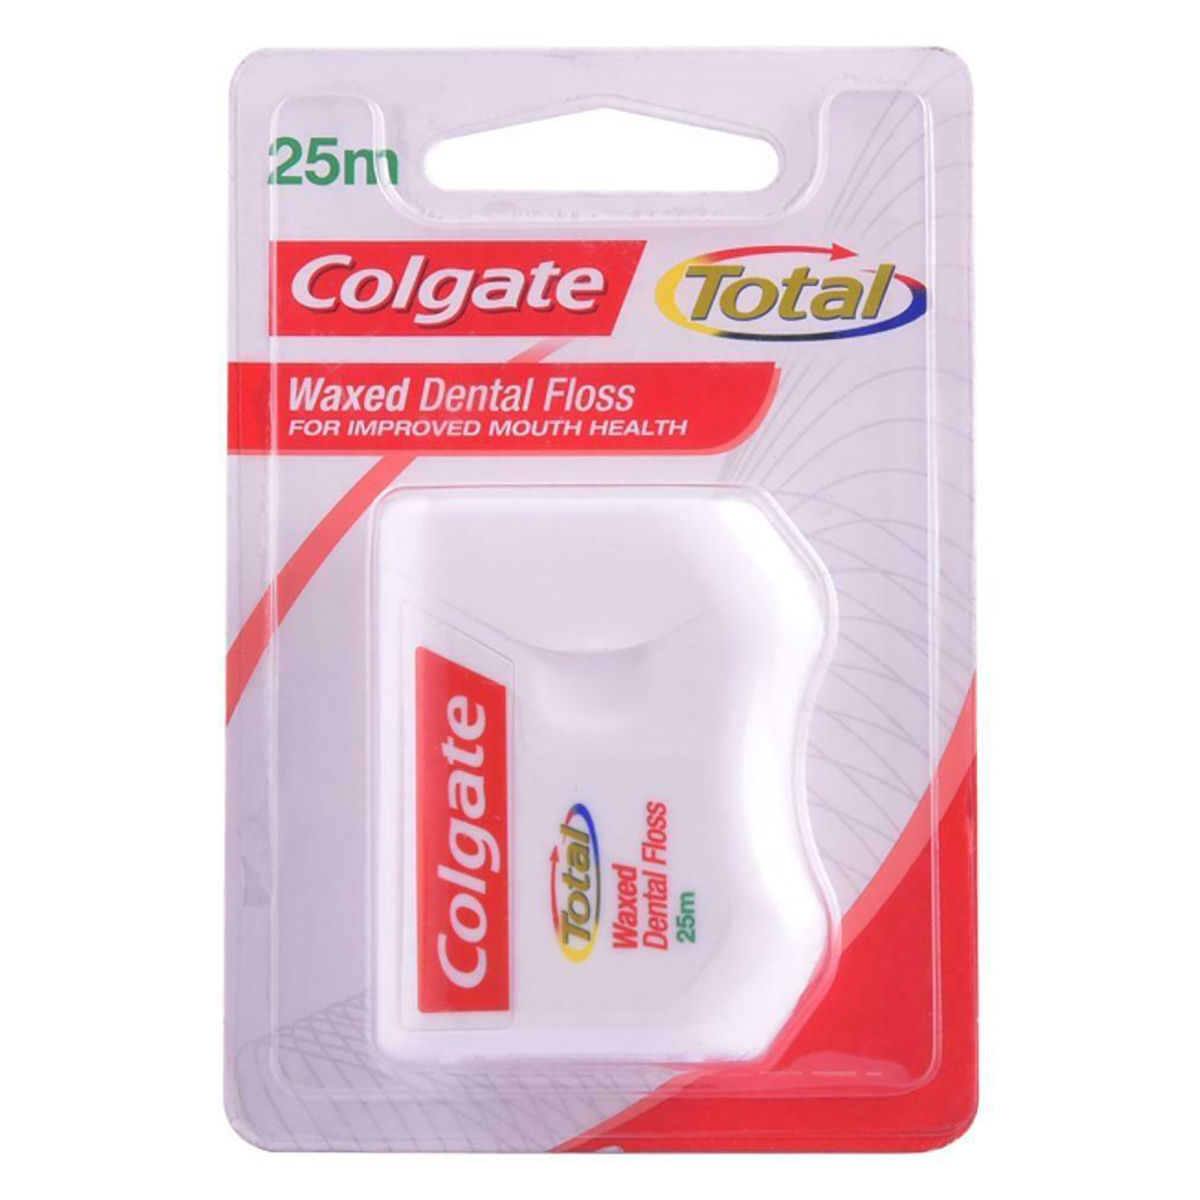 Buy Colgate Total Waxed Dental Floss, 25 m Online